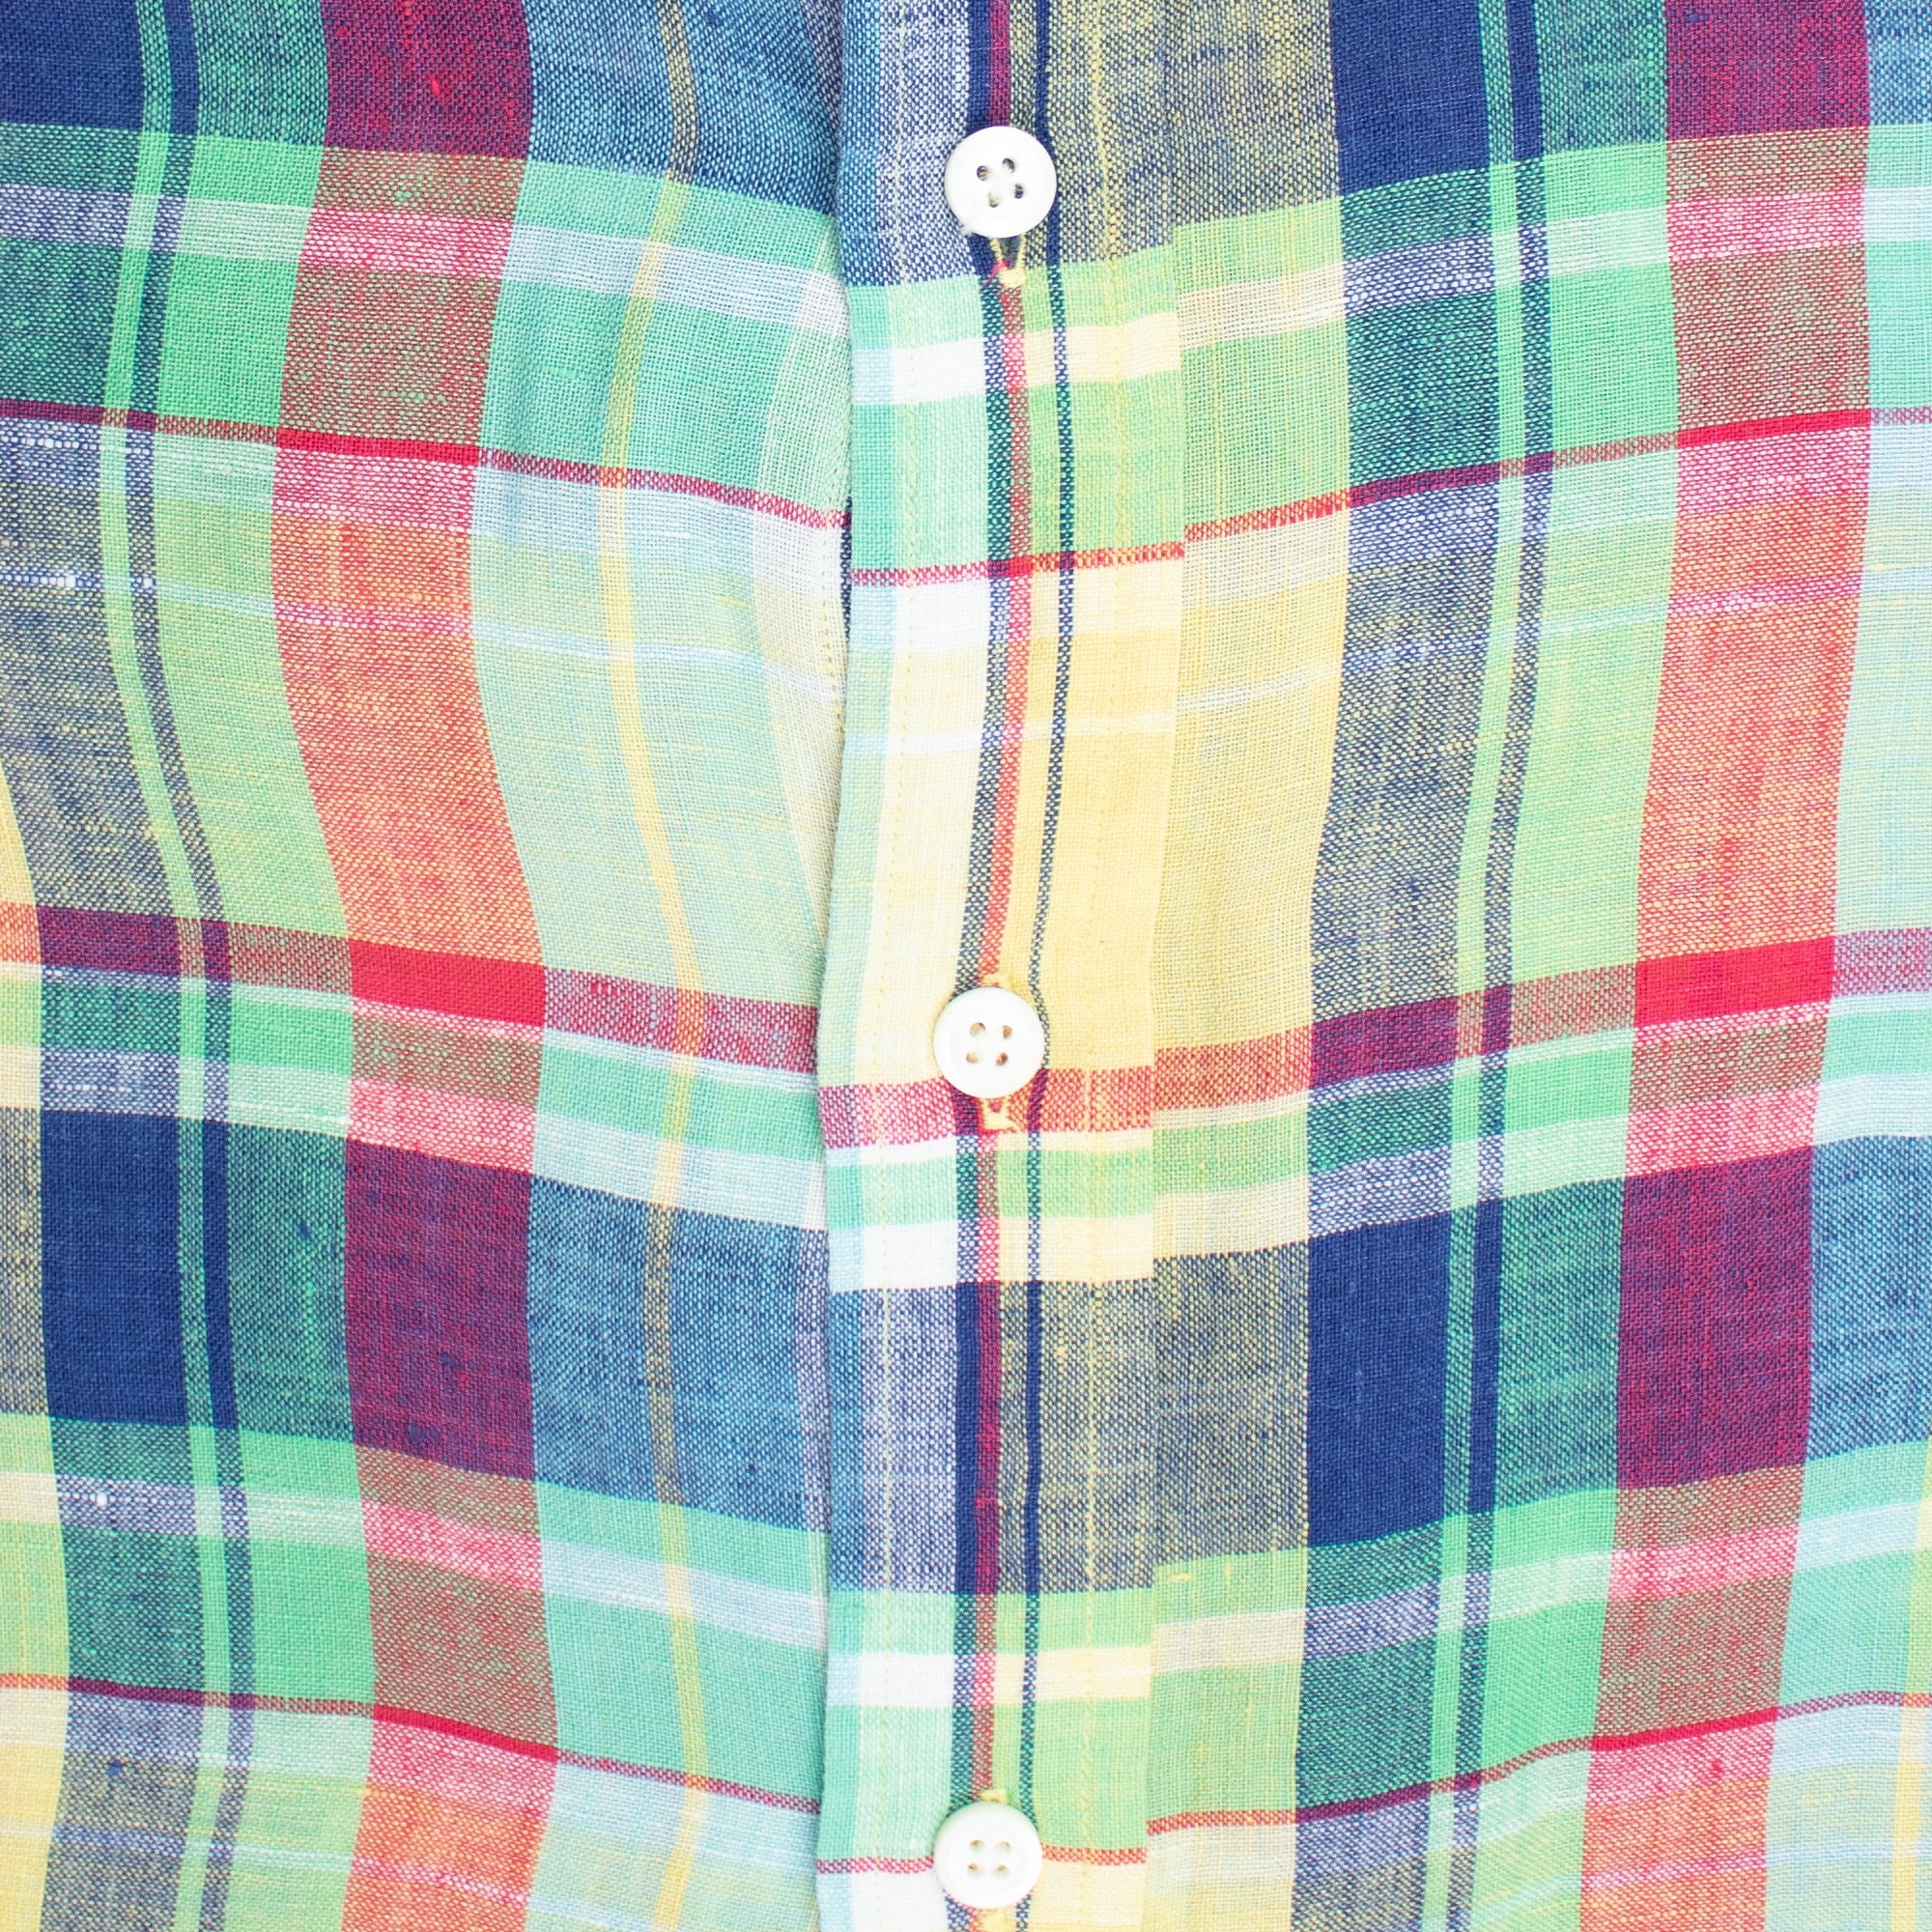 Vintage 100% Linen Multi-Color Plaid Large Long Sleeve Shirt — Ralph Lauren